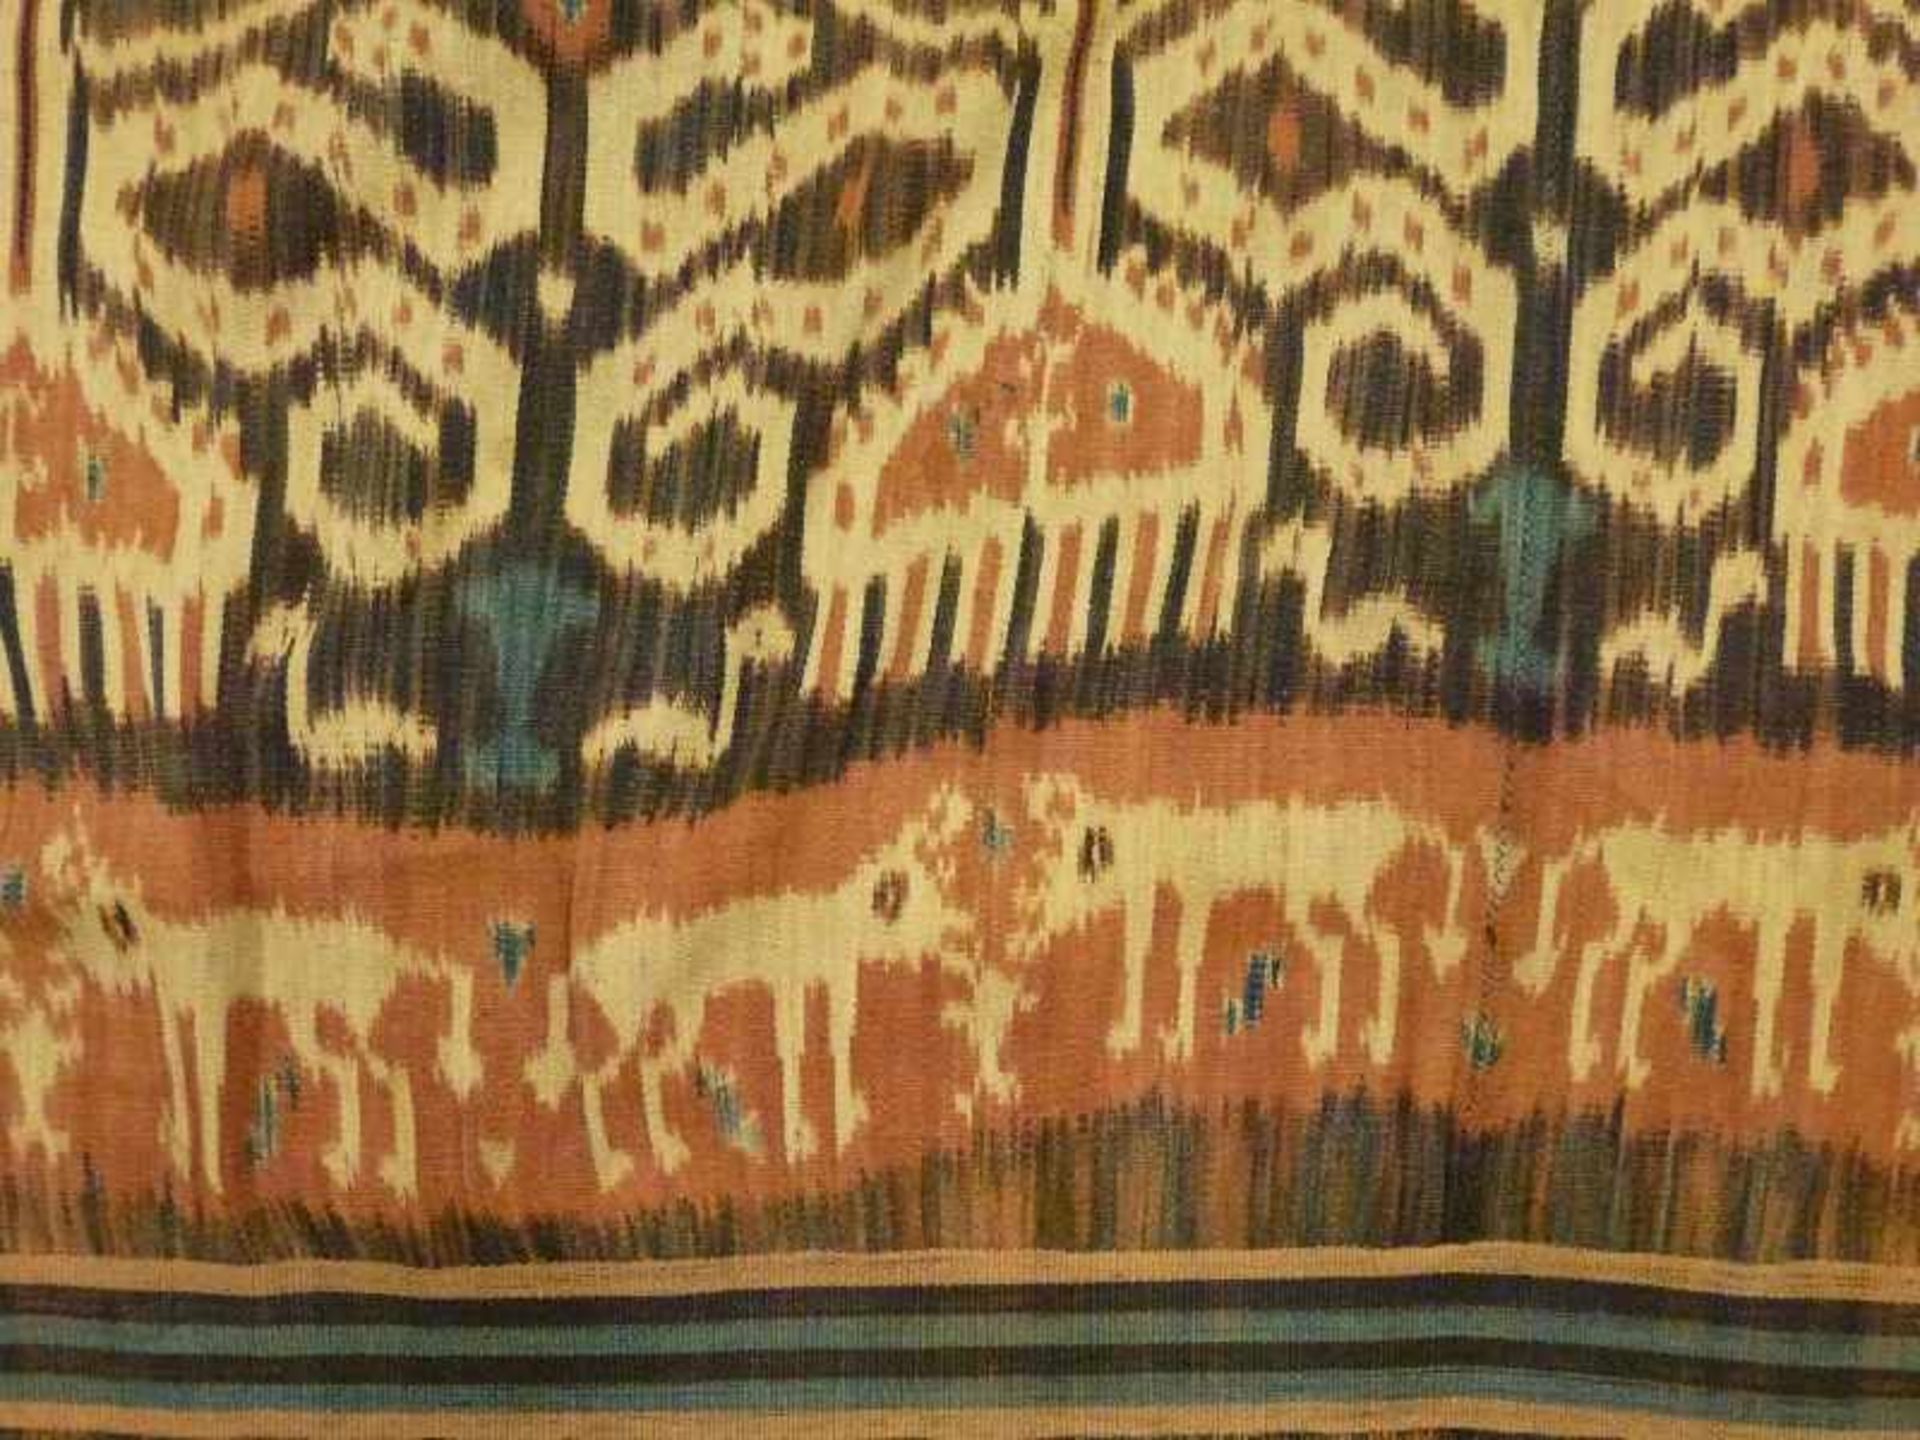 indonesisches Ikat gewebtes Tuch in Erdtönen, Tiere, Bäume u. Ornamente, gekürzt, 108x117 cm - Bild 2 aus 2